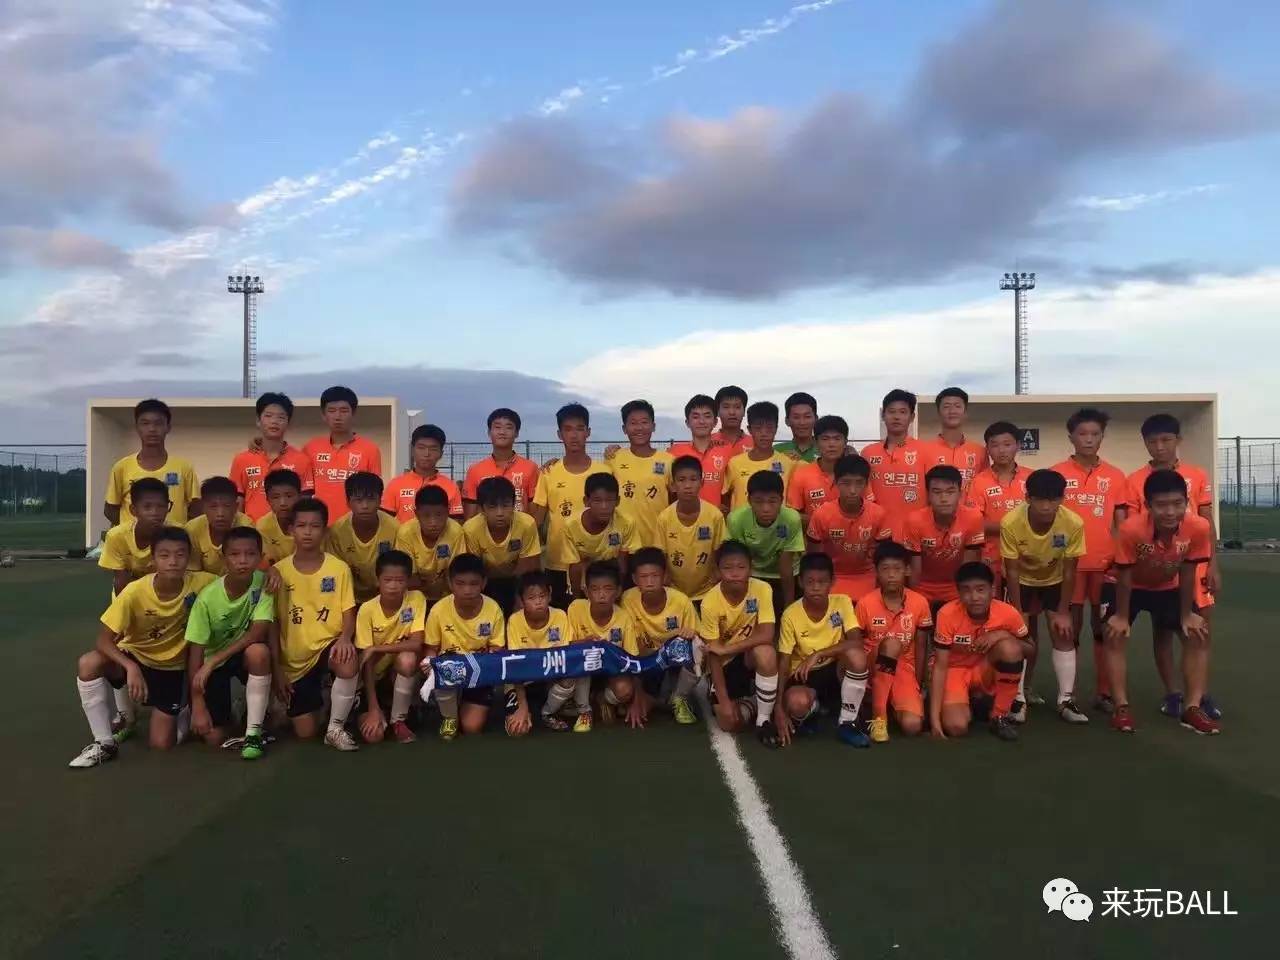 益冬令营参赛队伍巡礼:广州富力足球俱乐部青